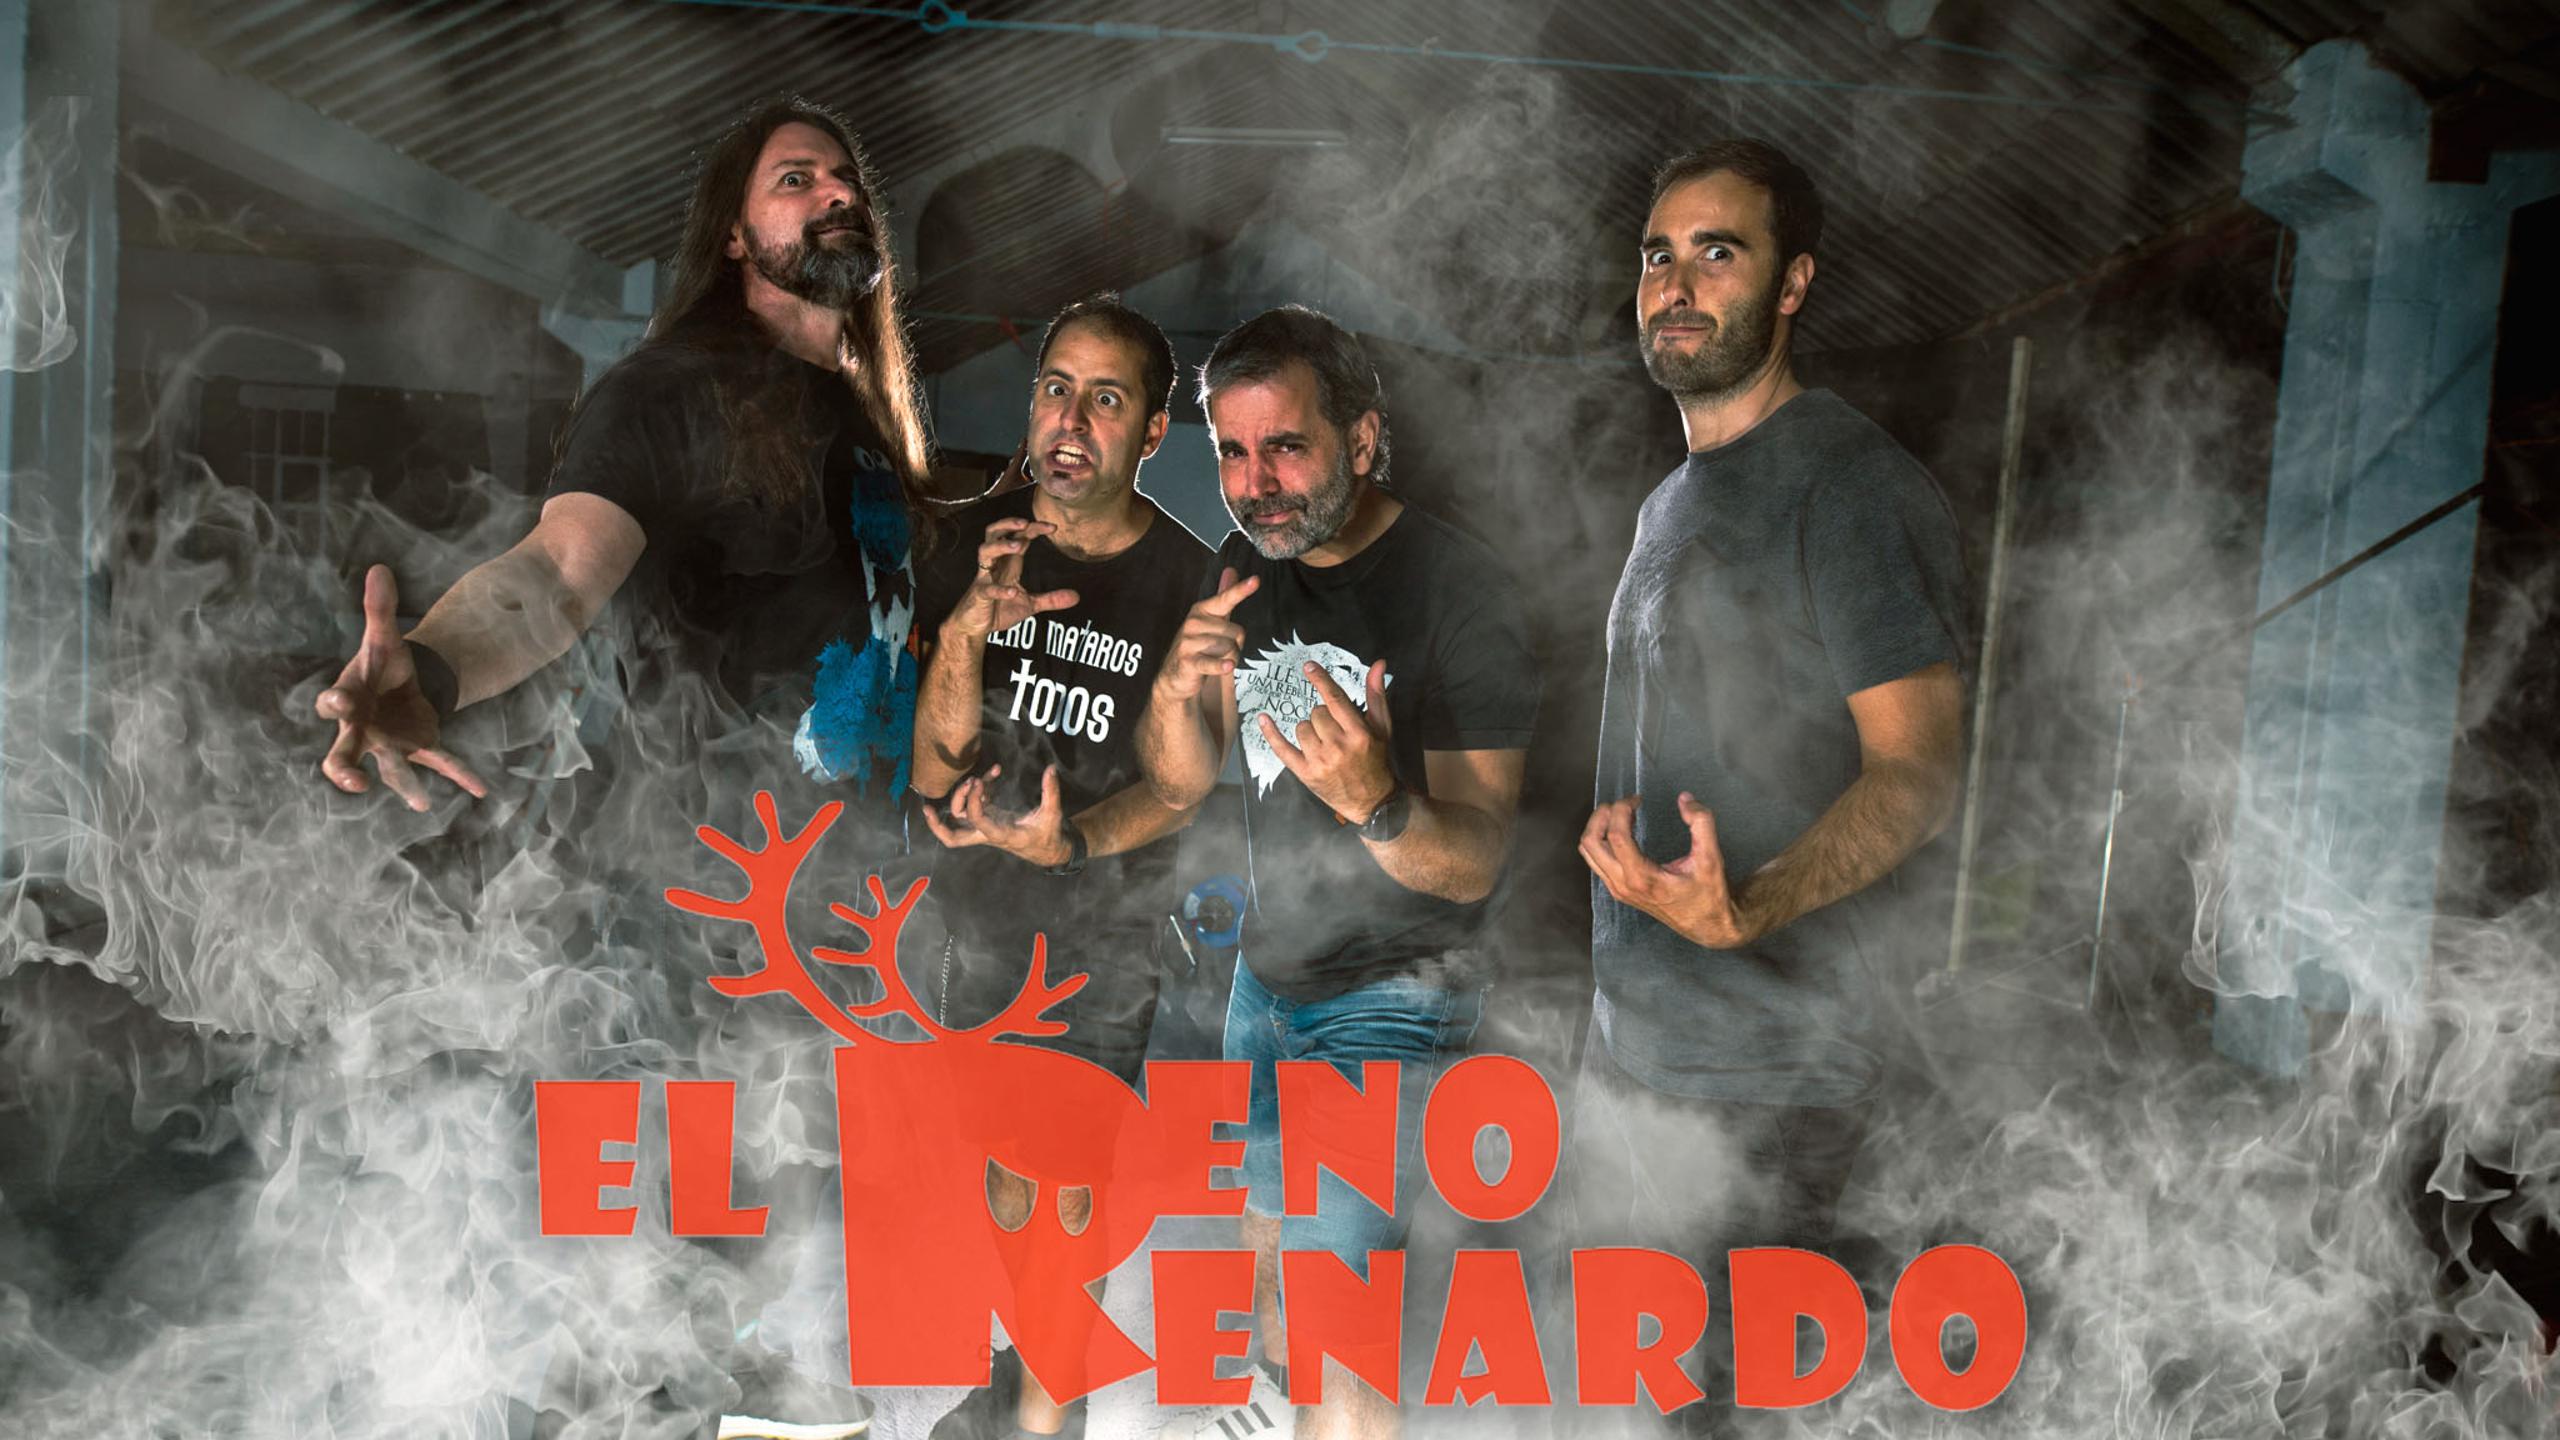 Fotografía promocional de El Reno Renardo en Burgos